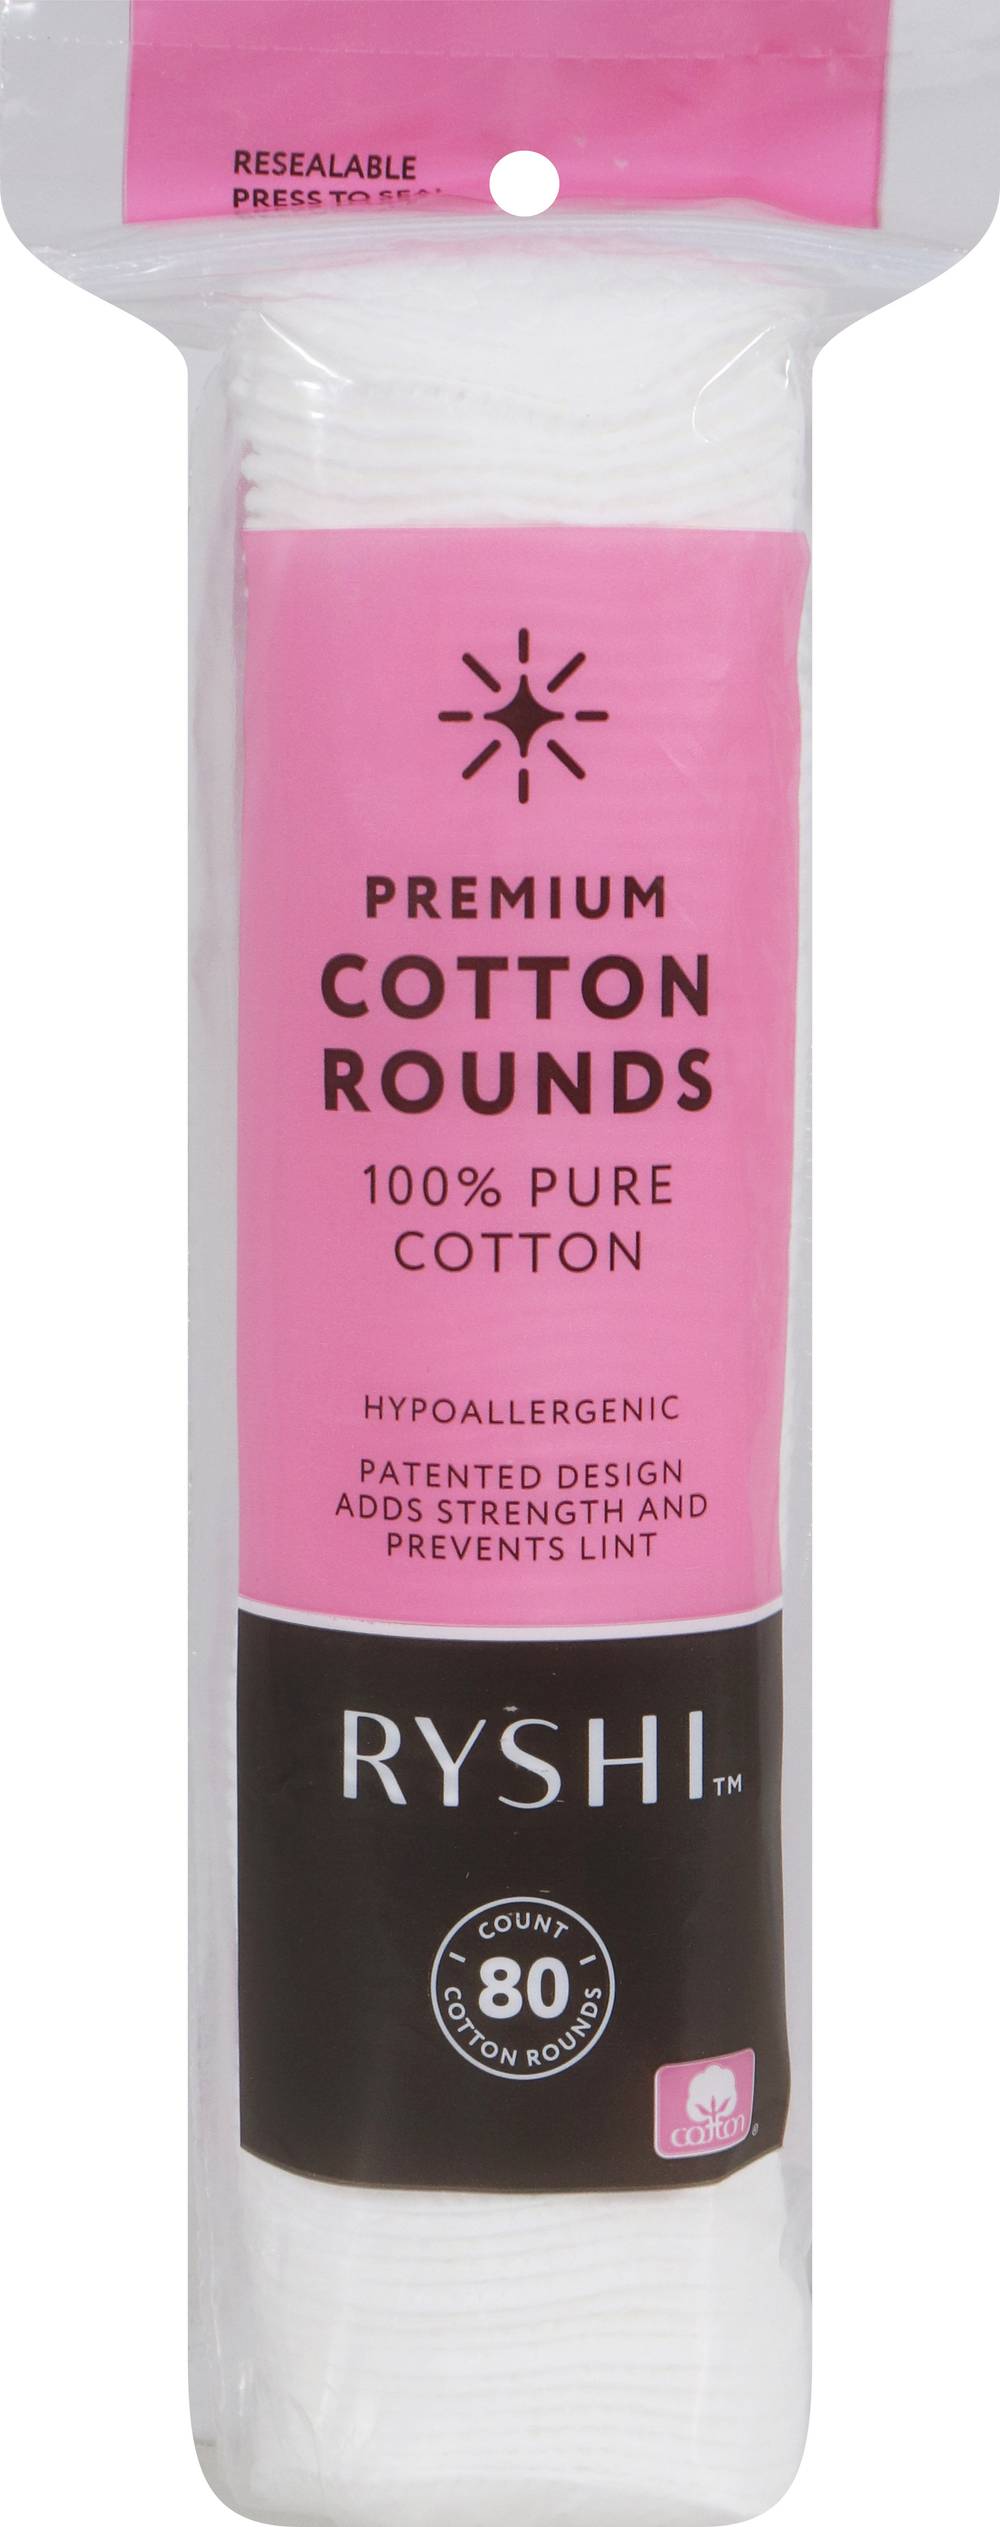 Ryshi Premium Cotton Rounds (80 ct)